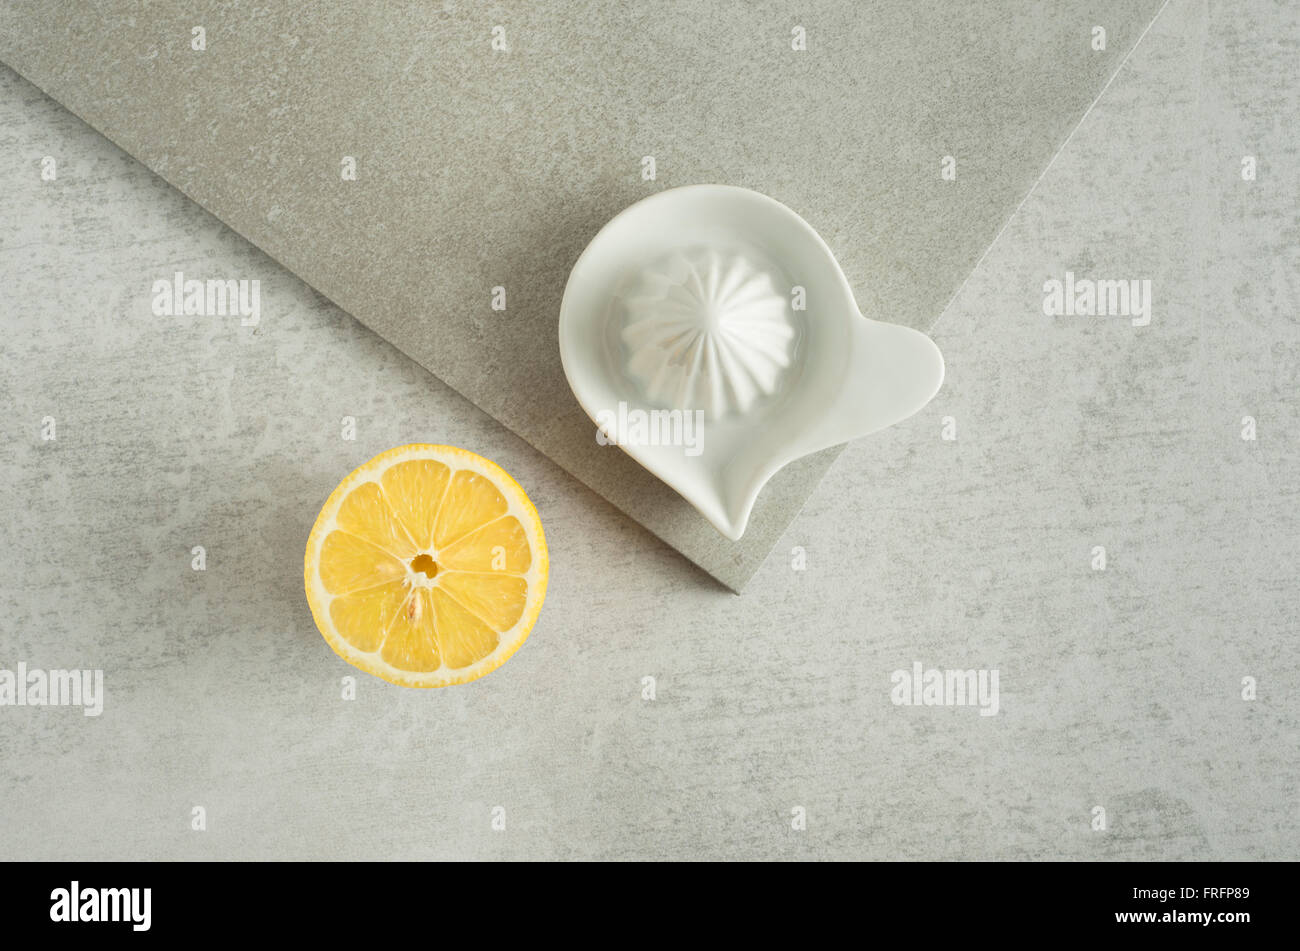 Il limone e strizzatore sul tavolo da cucina. Concetto di preparazione del cibo e la cucina con frutta fresca. Foto Stock